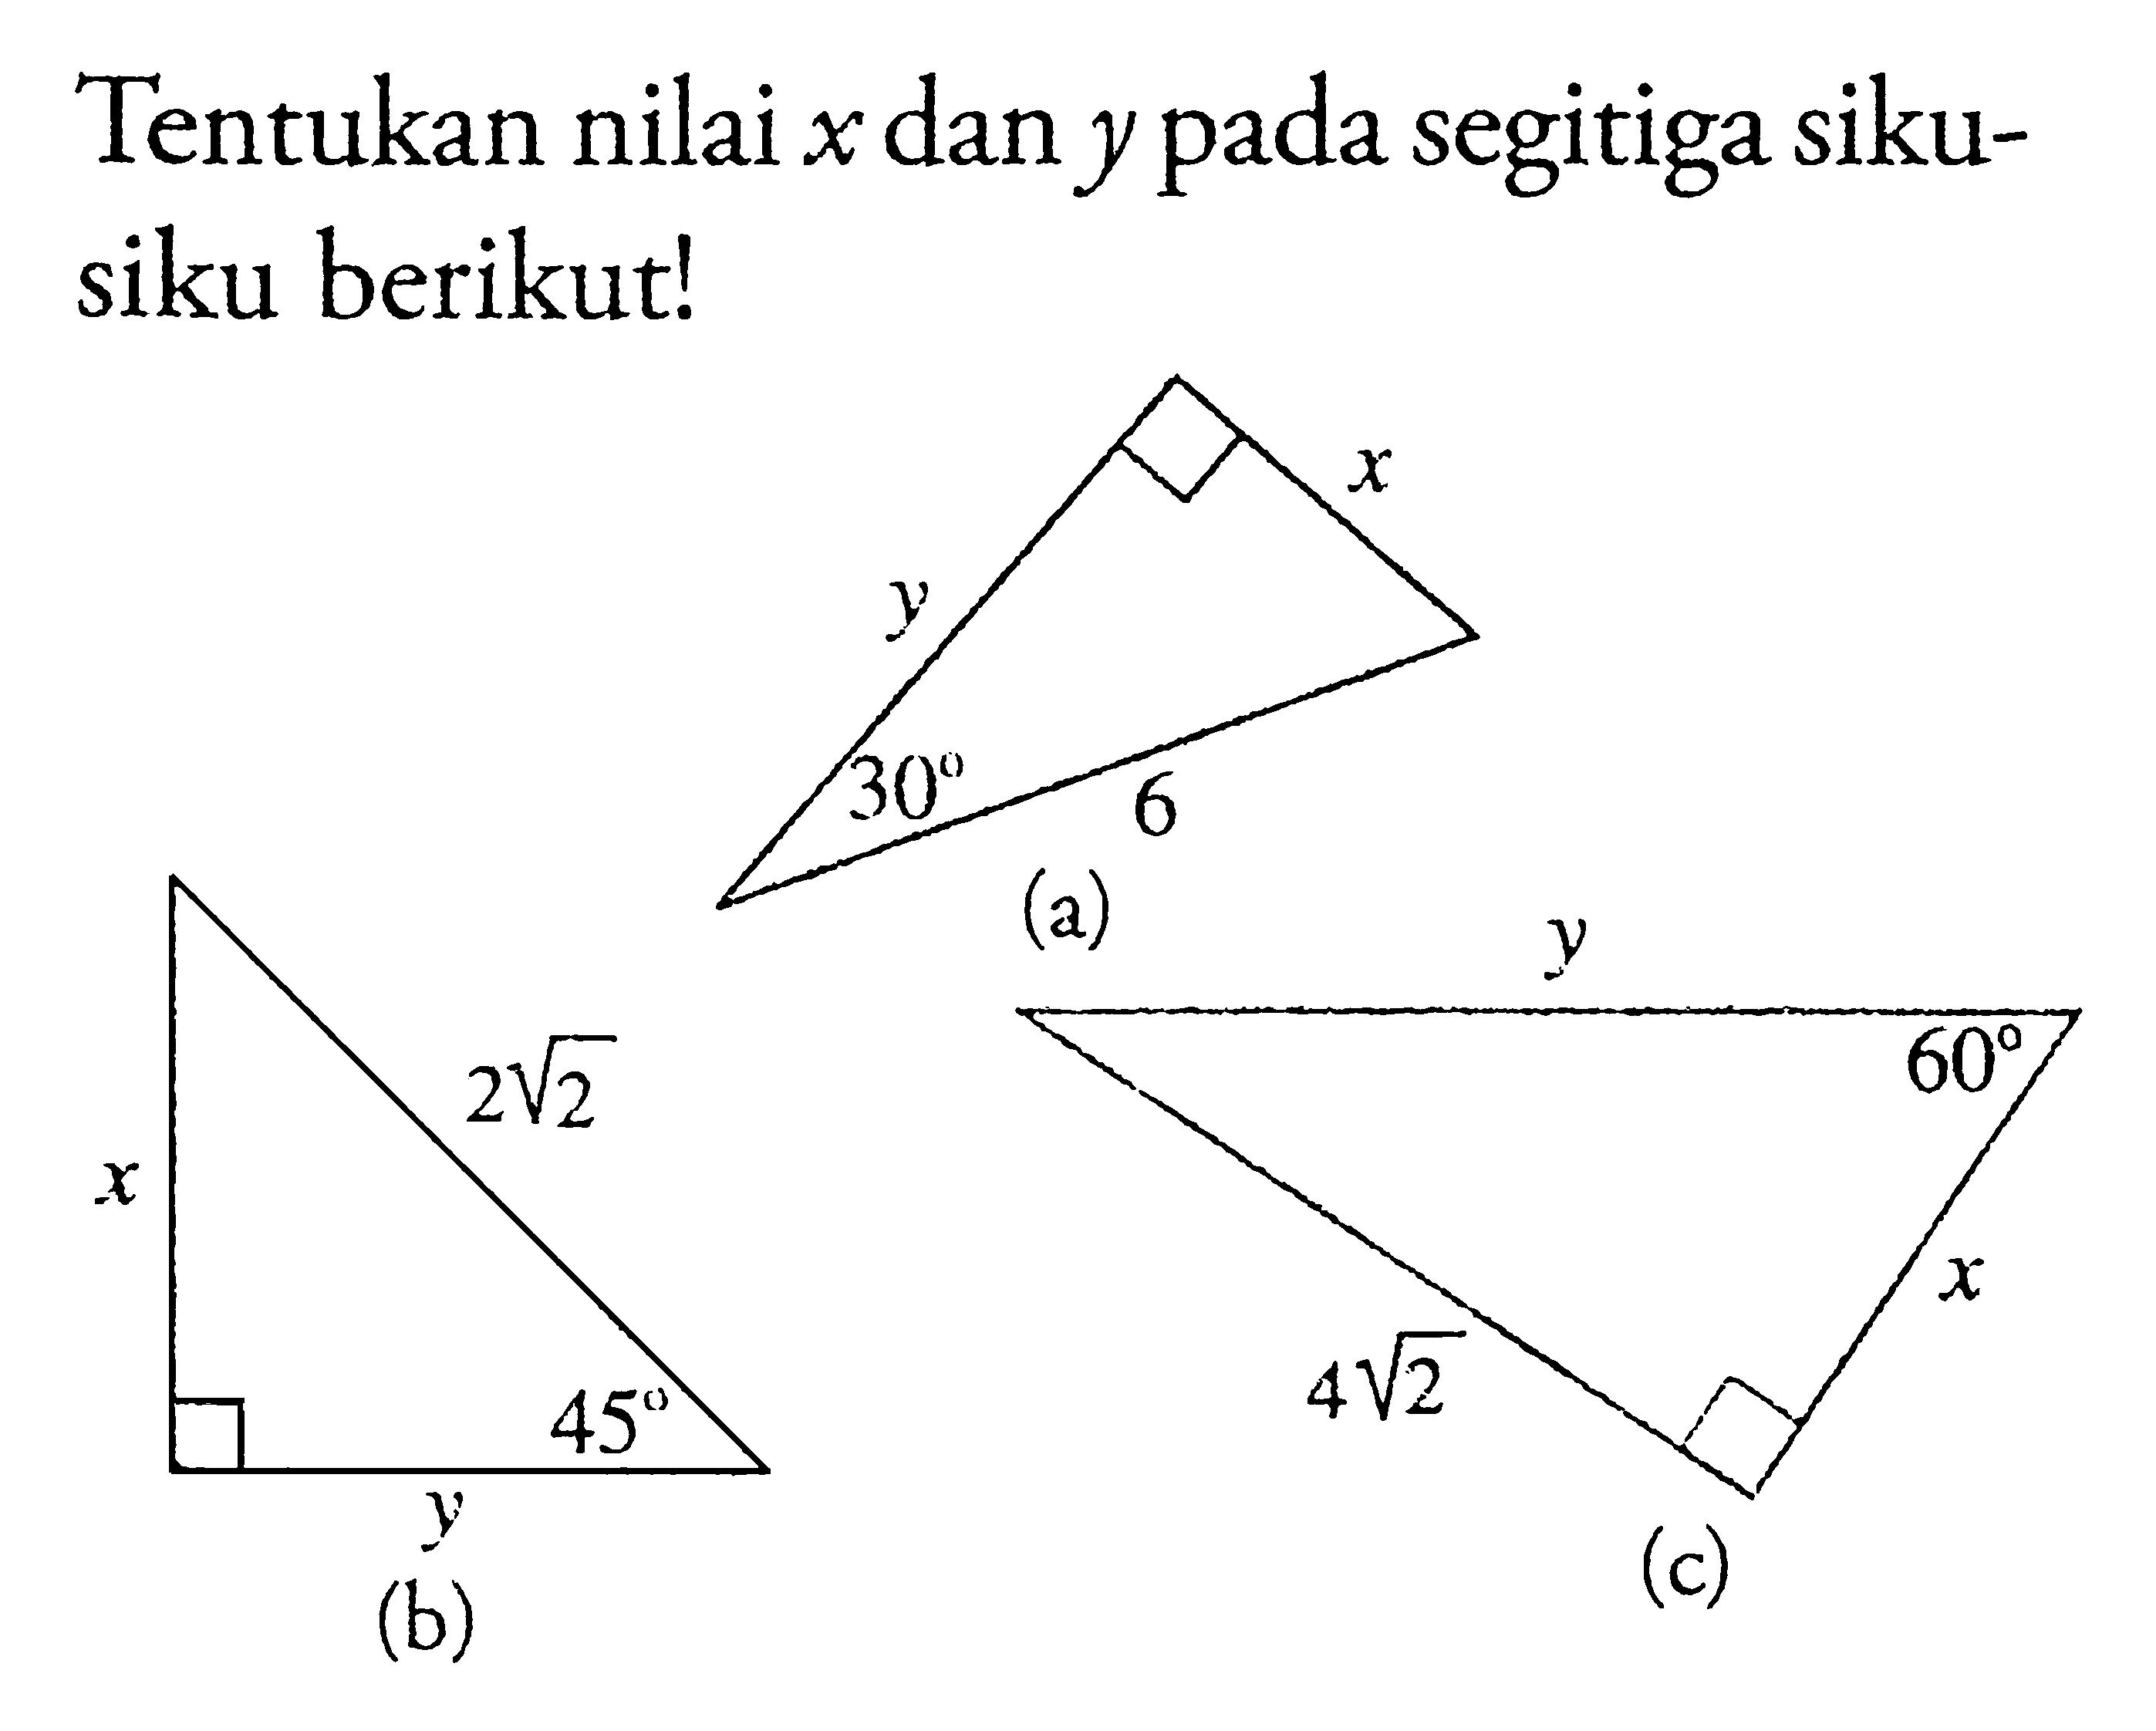 Tentukan nilai x dan y pada segitiga siku-siku berikut!(a)
(b)(c)